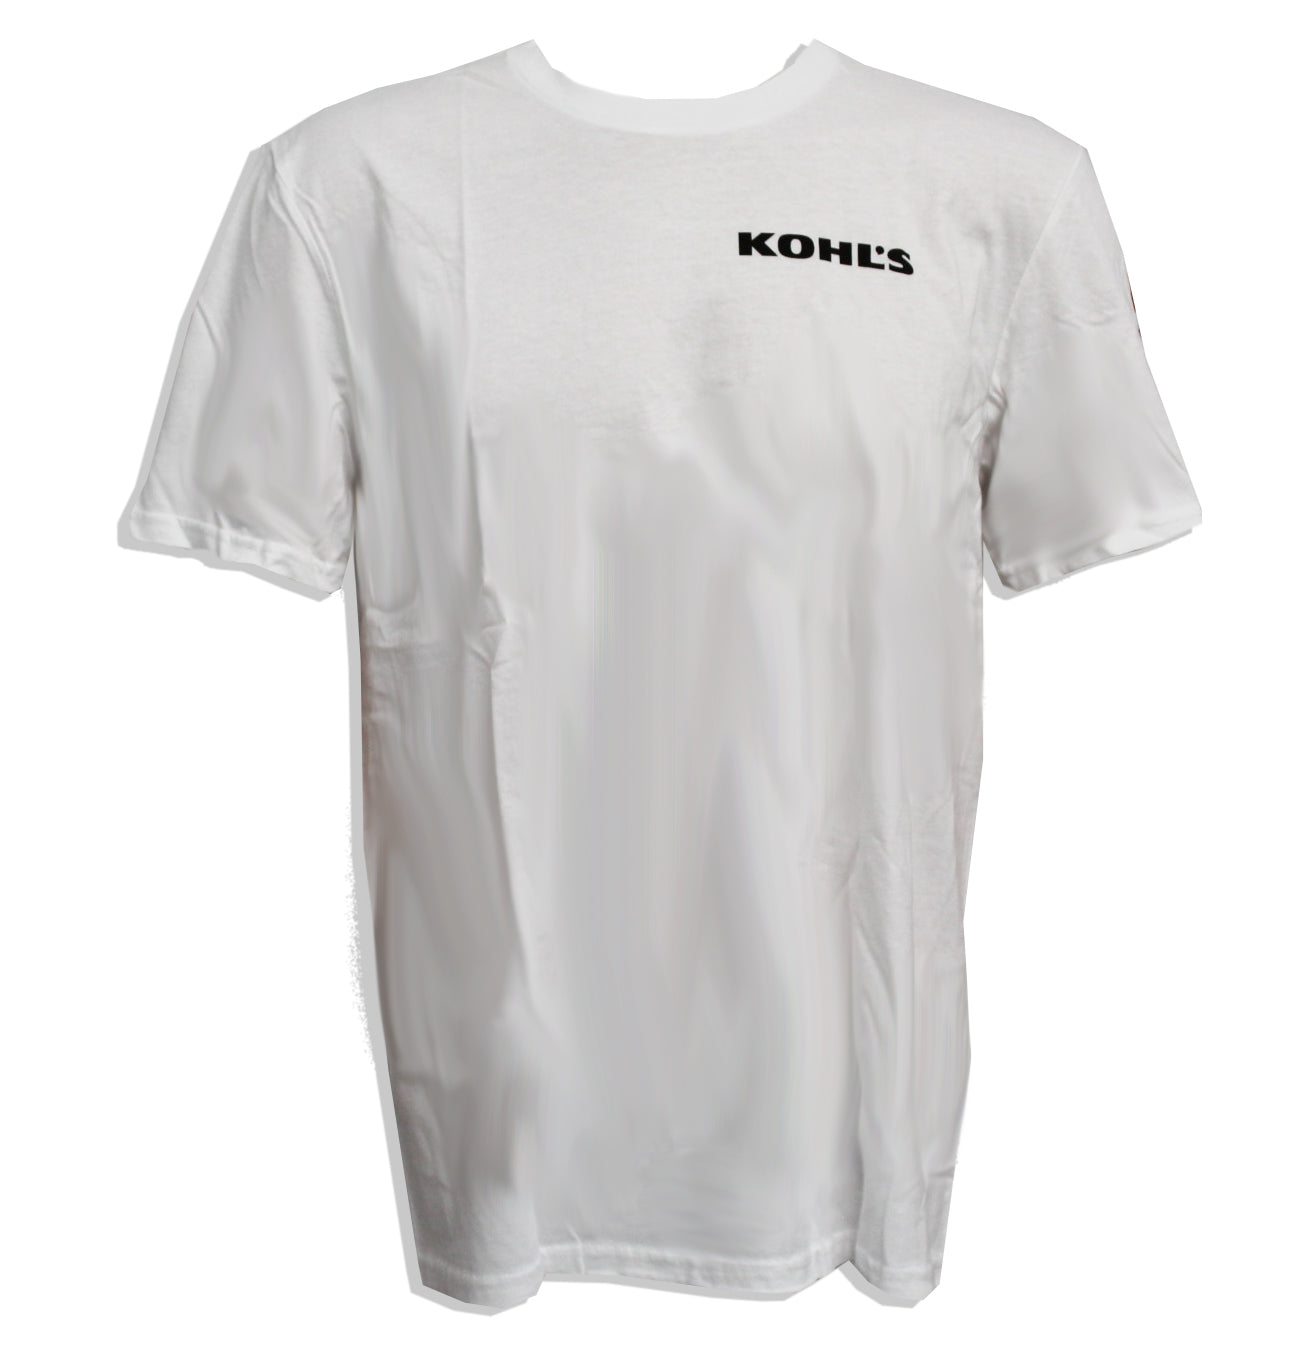 Kohl's White Unisex T-shirt